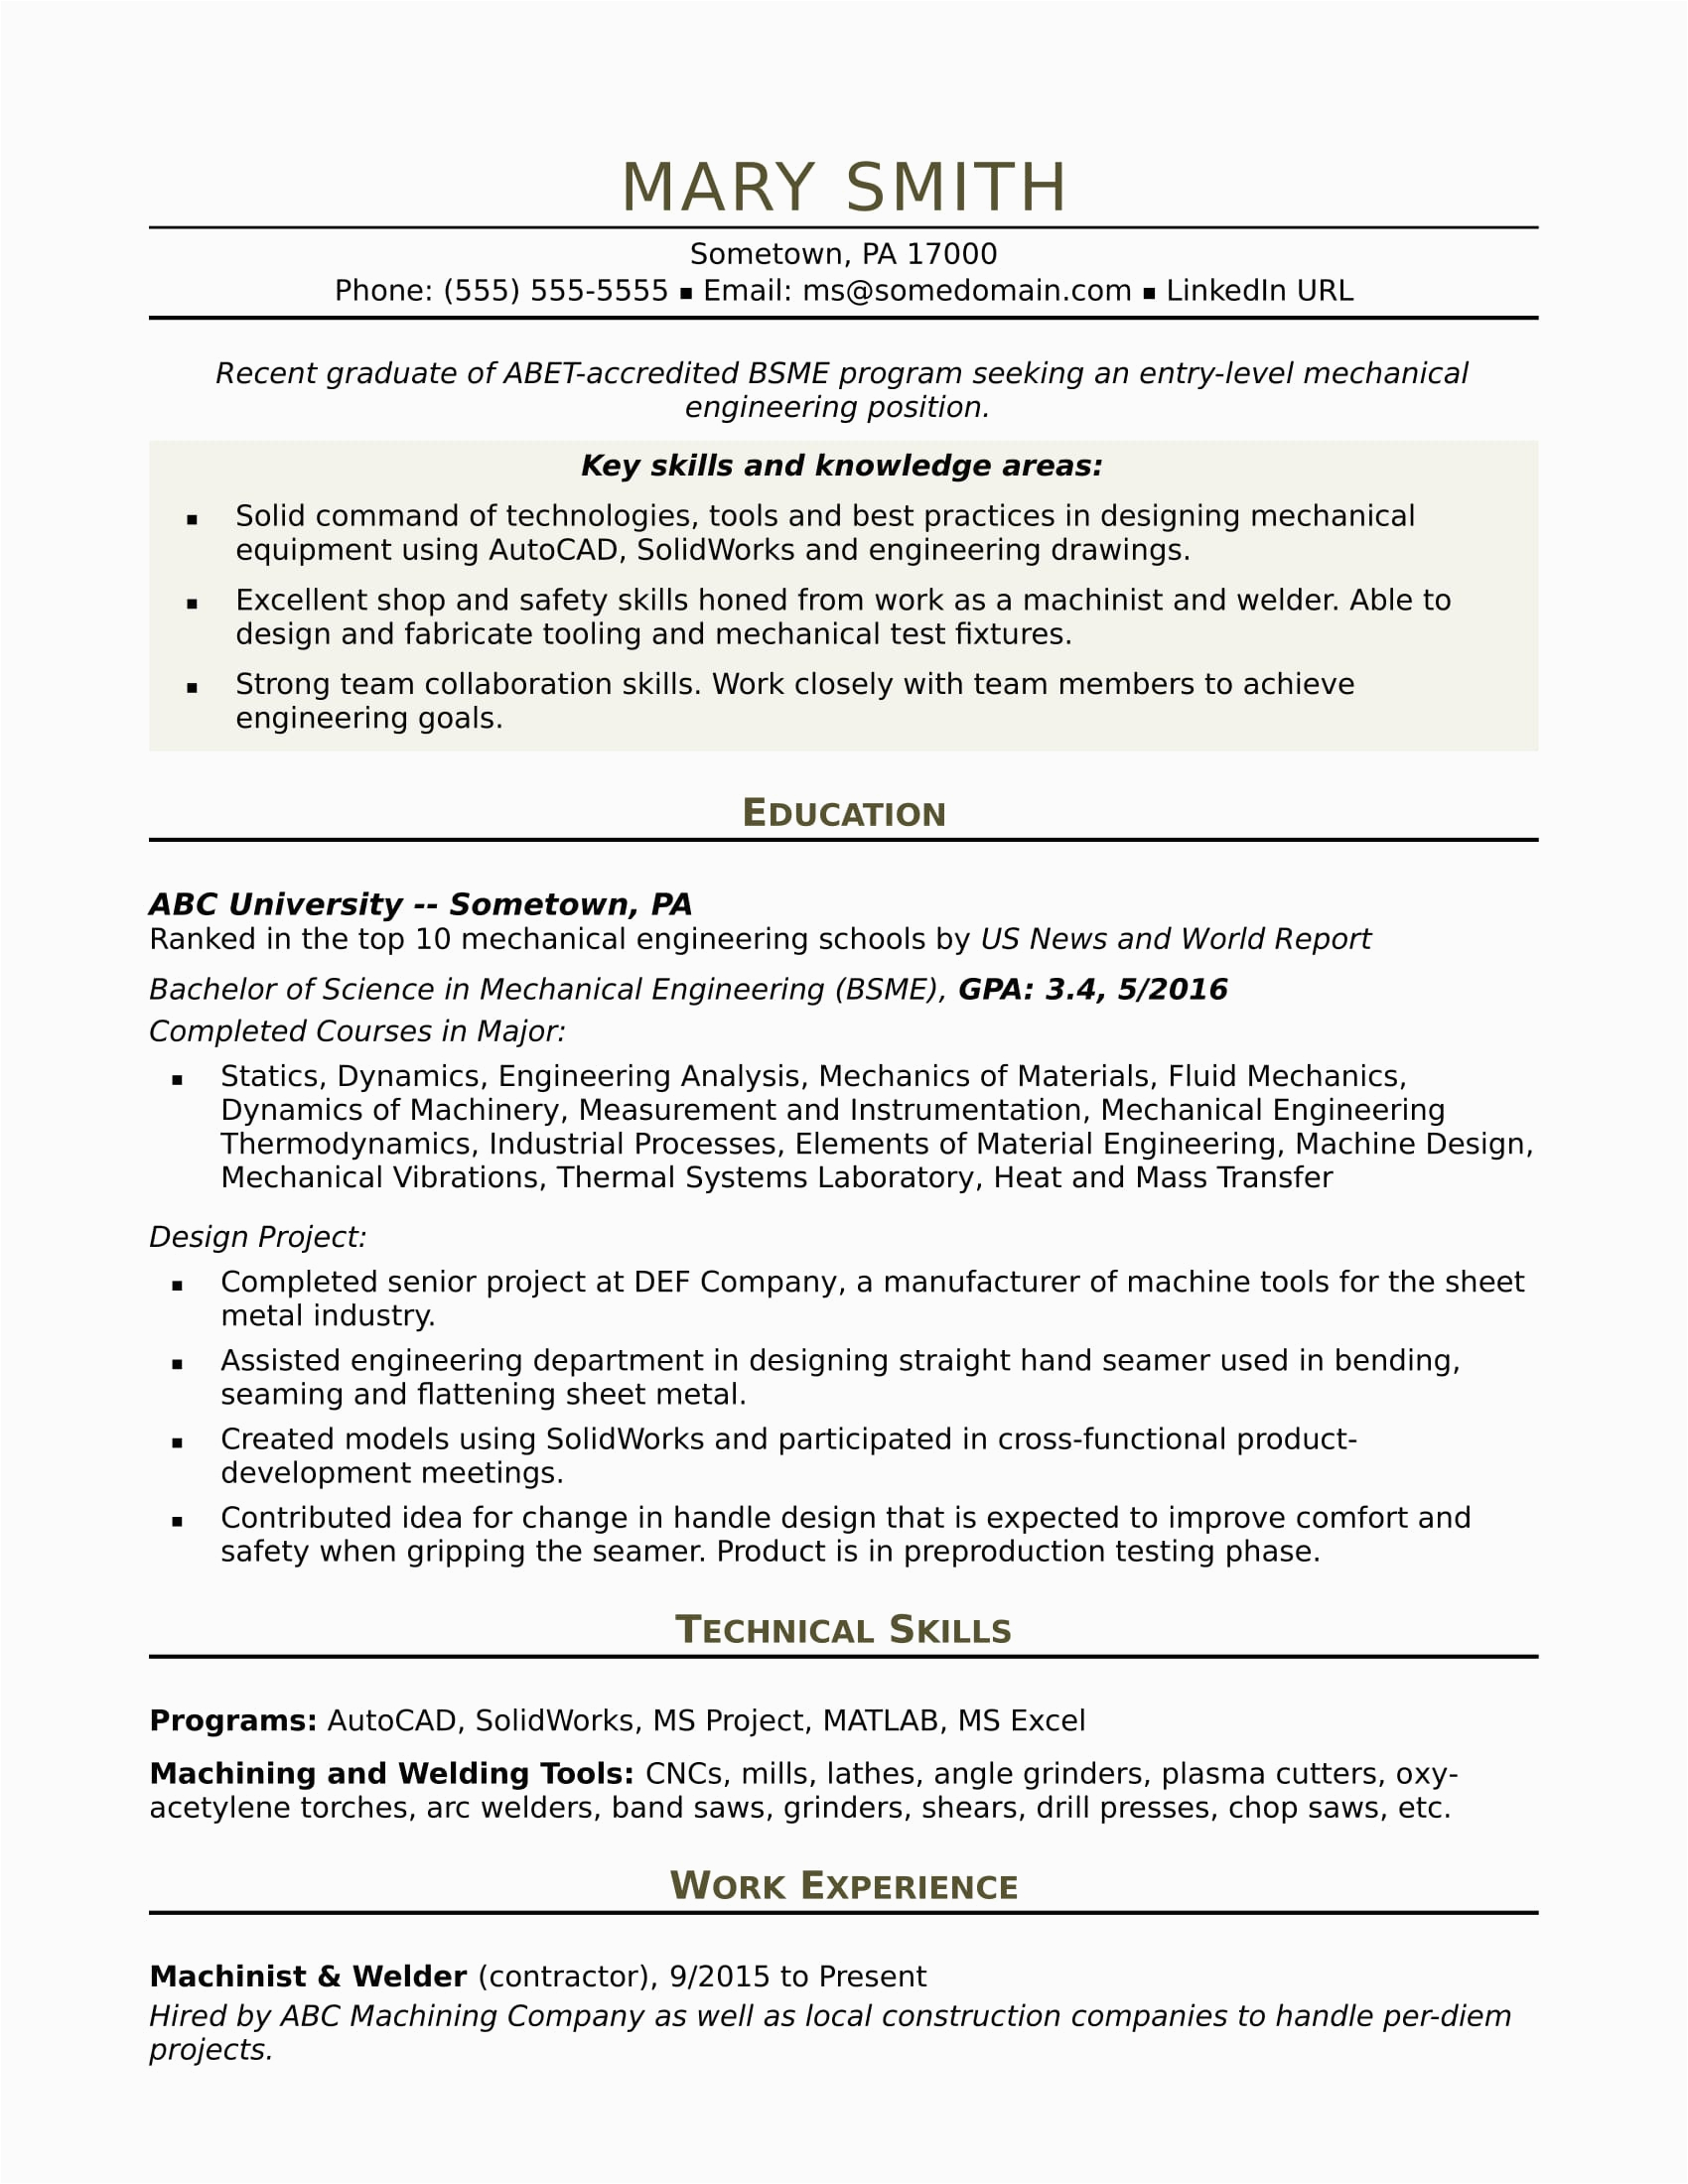 Sample Resume for Mechanical Engineer In Construction Sample Resume for An Entry Level Mechanical Engineer